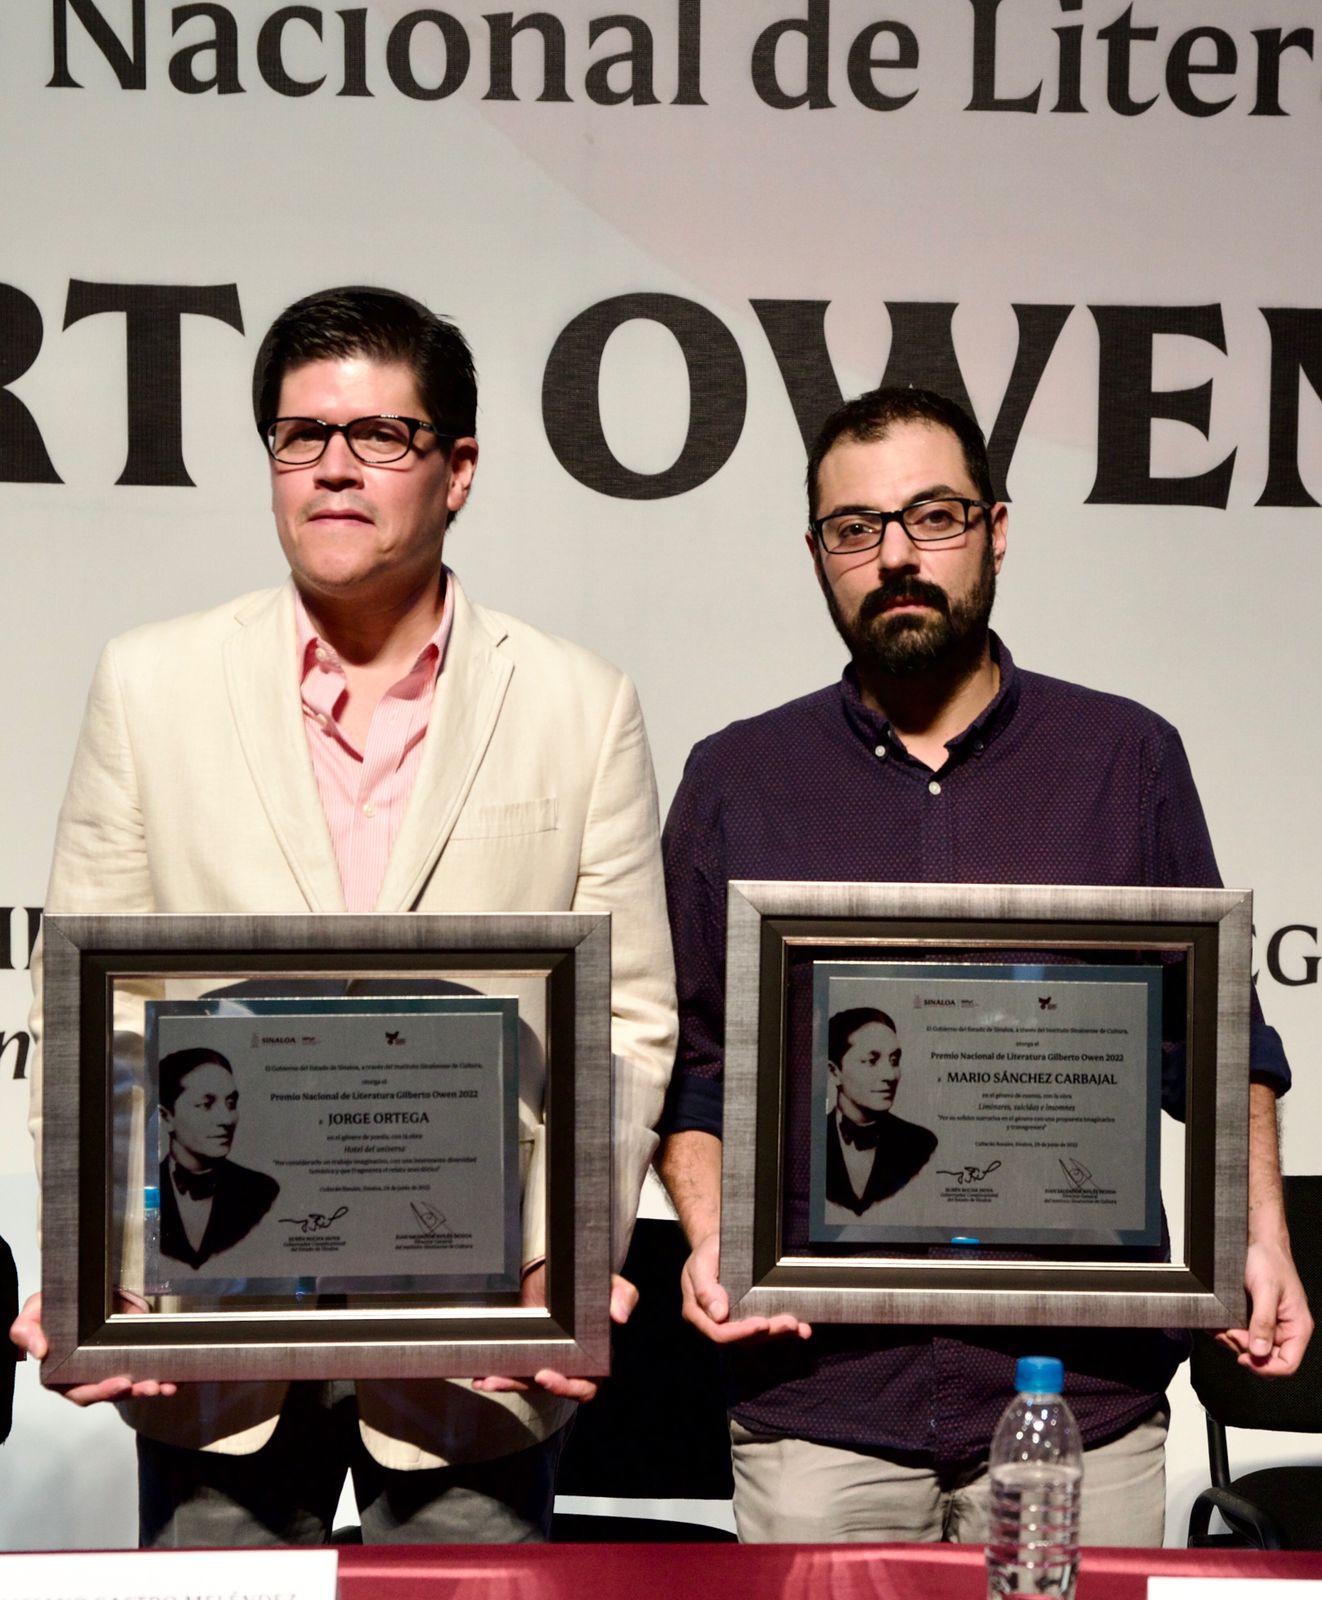 $!Reciben Jorge Ortega y Mario Sánchez Carbajal el Premio Gilberto Owen